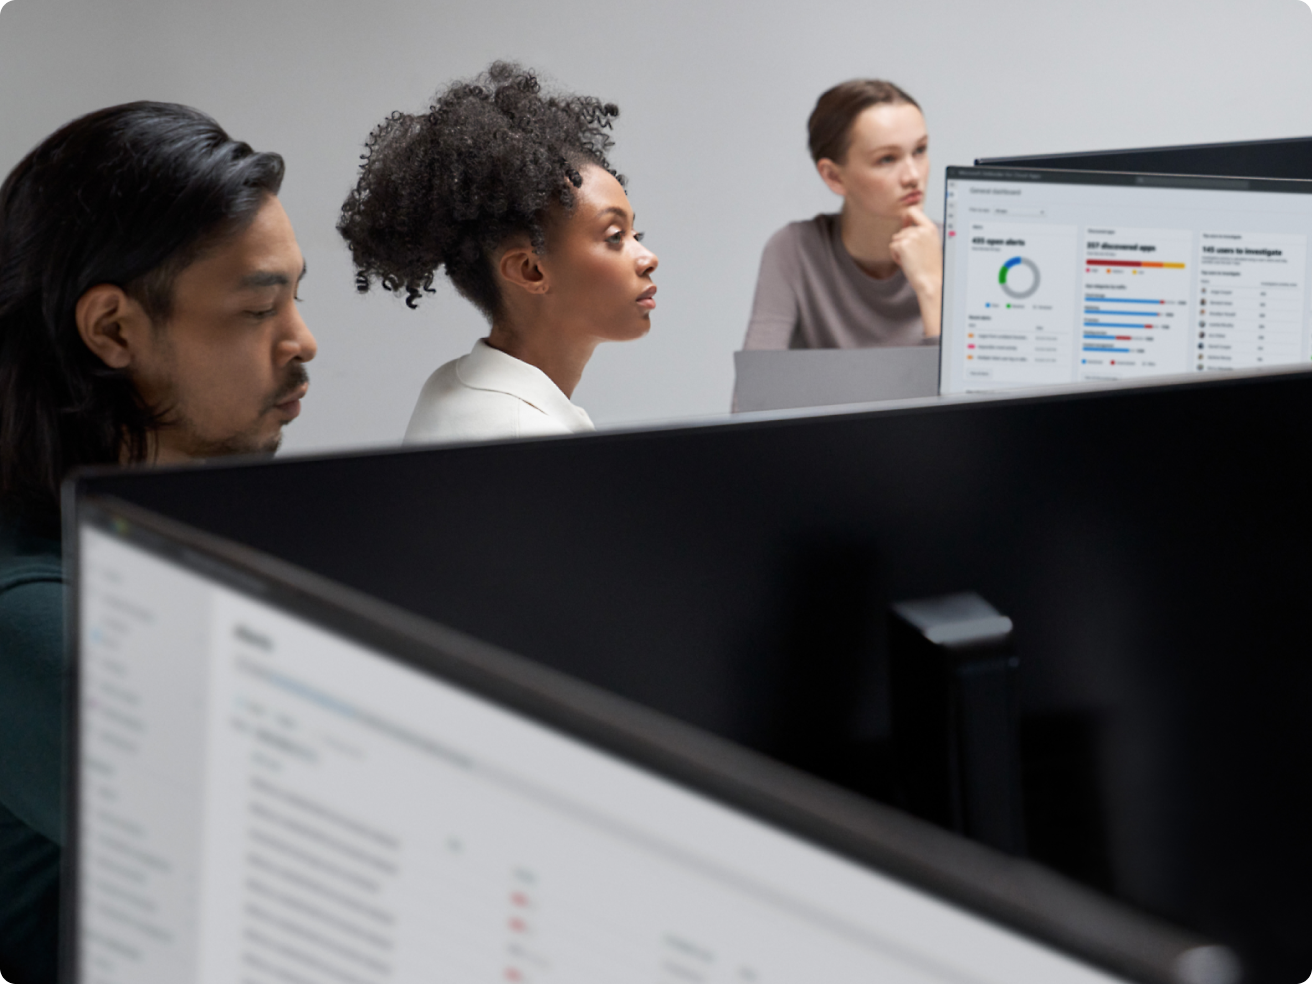 Троє працівників у сучасному офісі дивляться на екрани комп’ютерів, де відображаються графіки й інші дані.